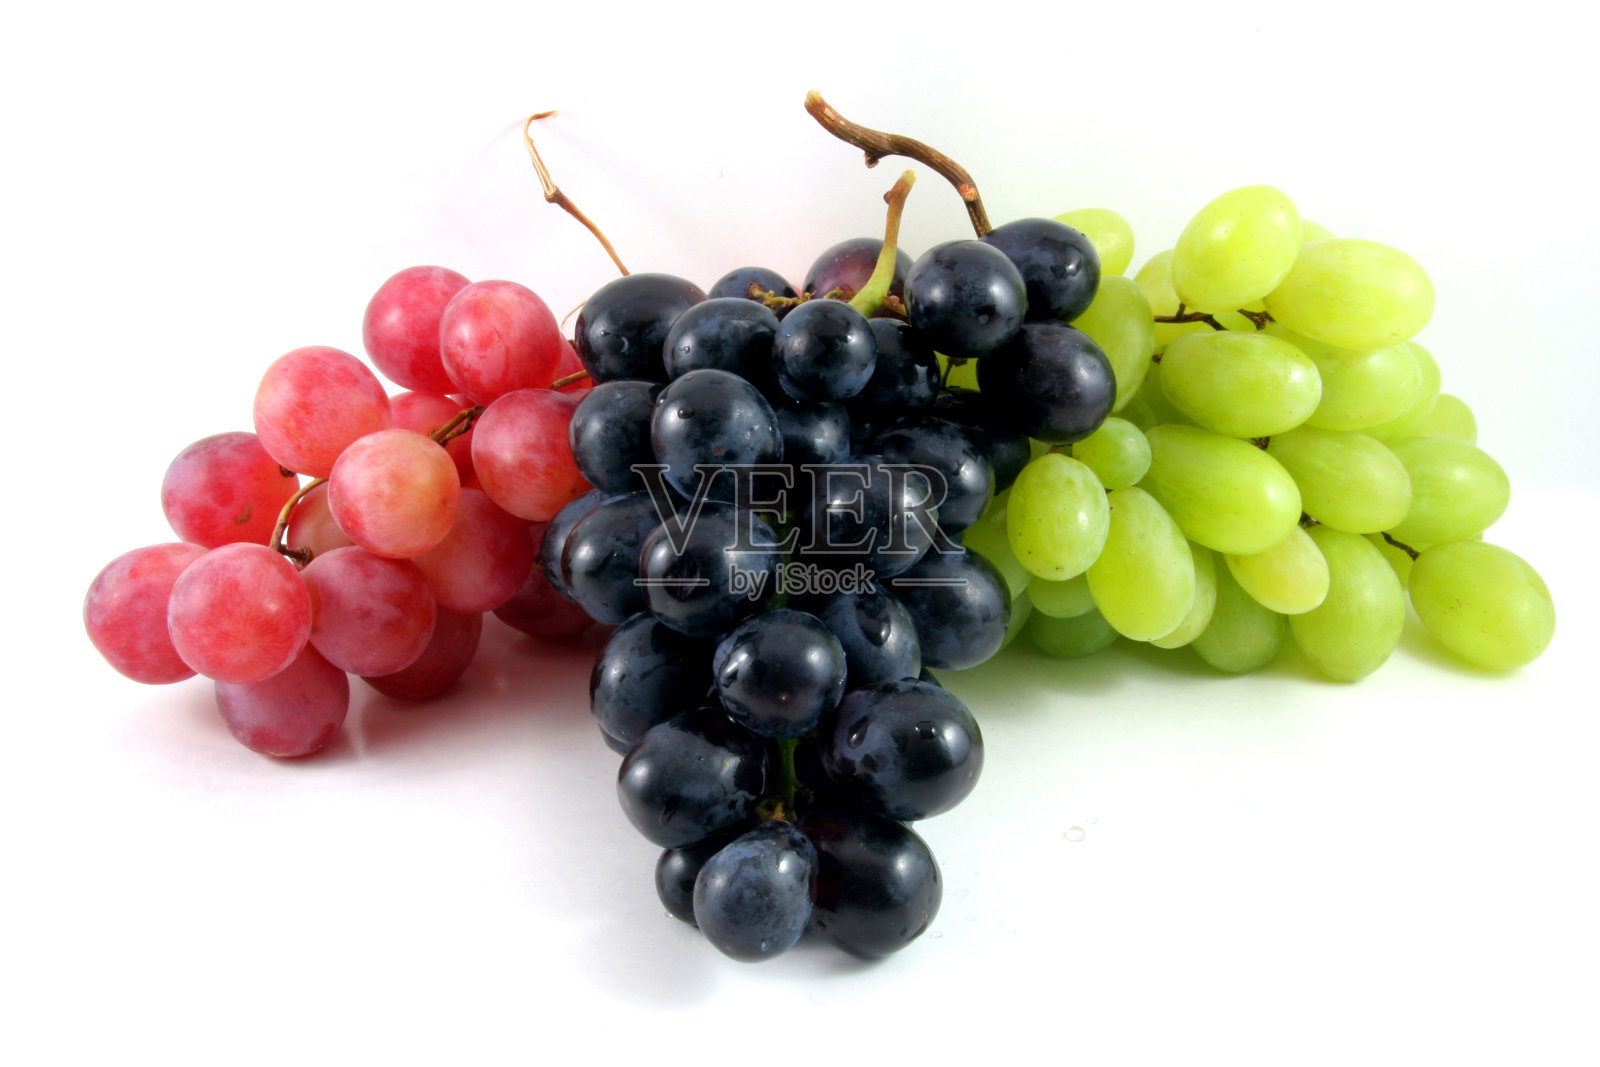 一串串红的、黑的、绿的葡萄串在白的上面照片摄影图片